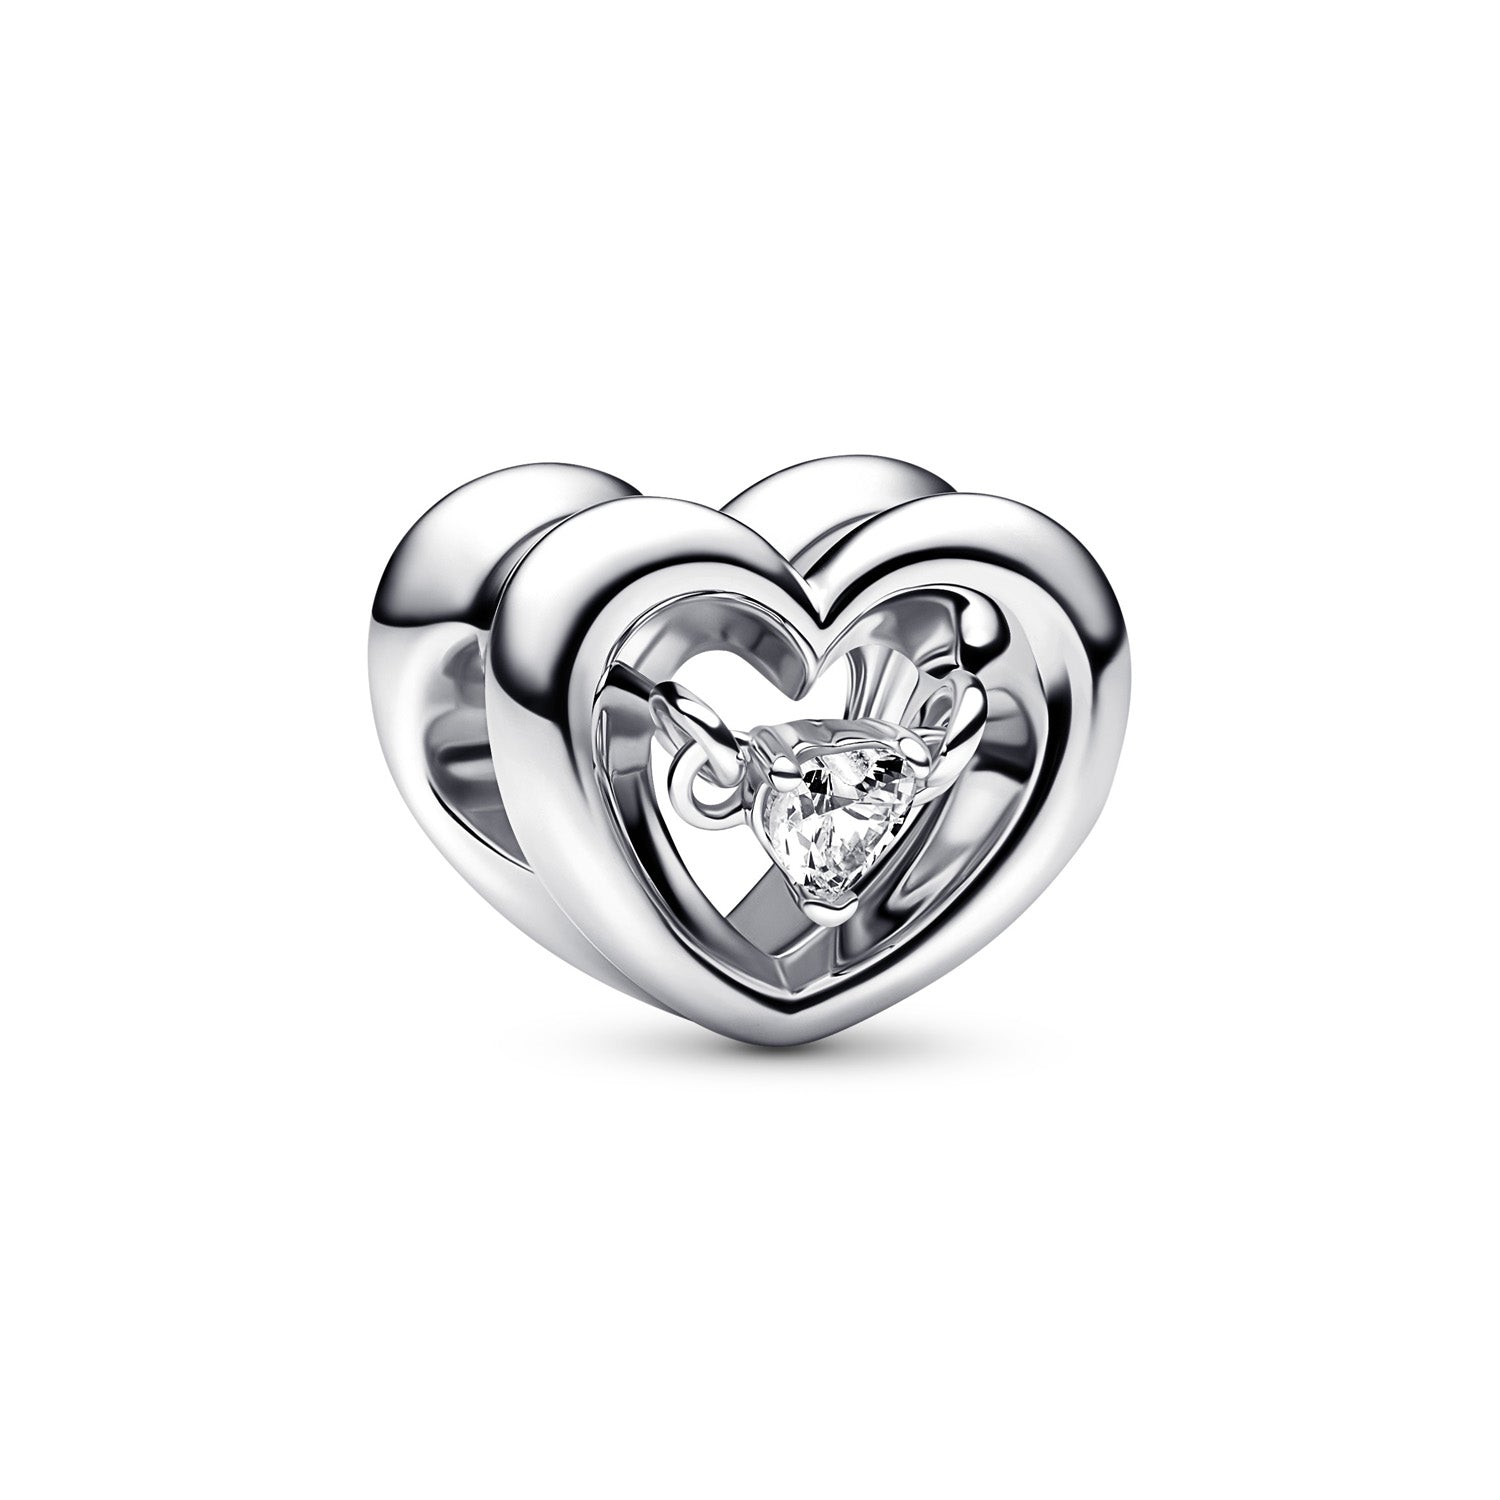 Billede af Pandora - Åbent hjerte charm sølv sterlingsølv